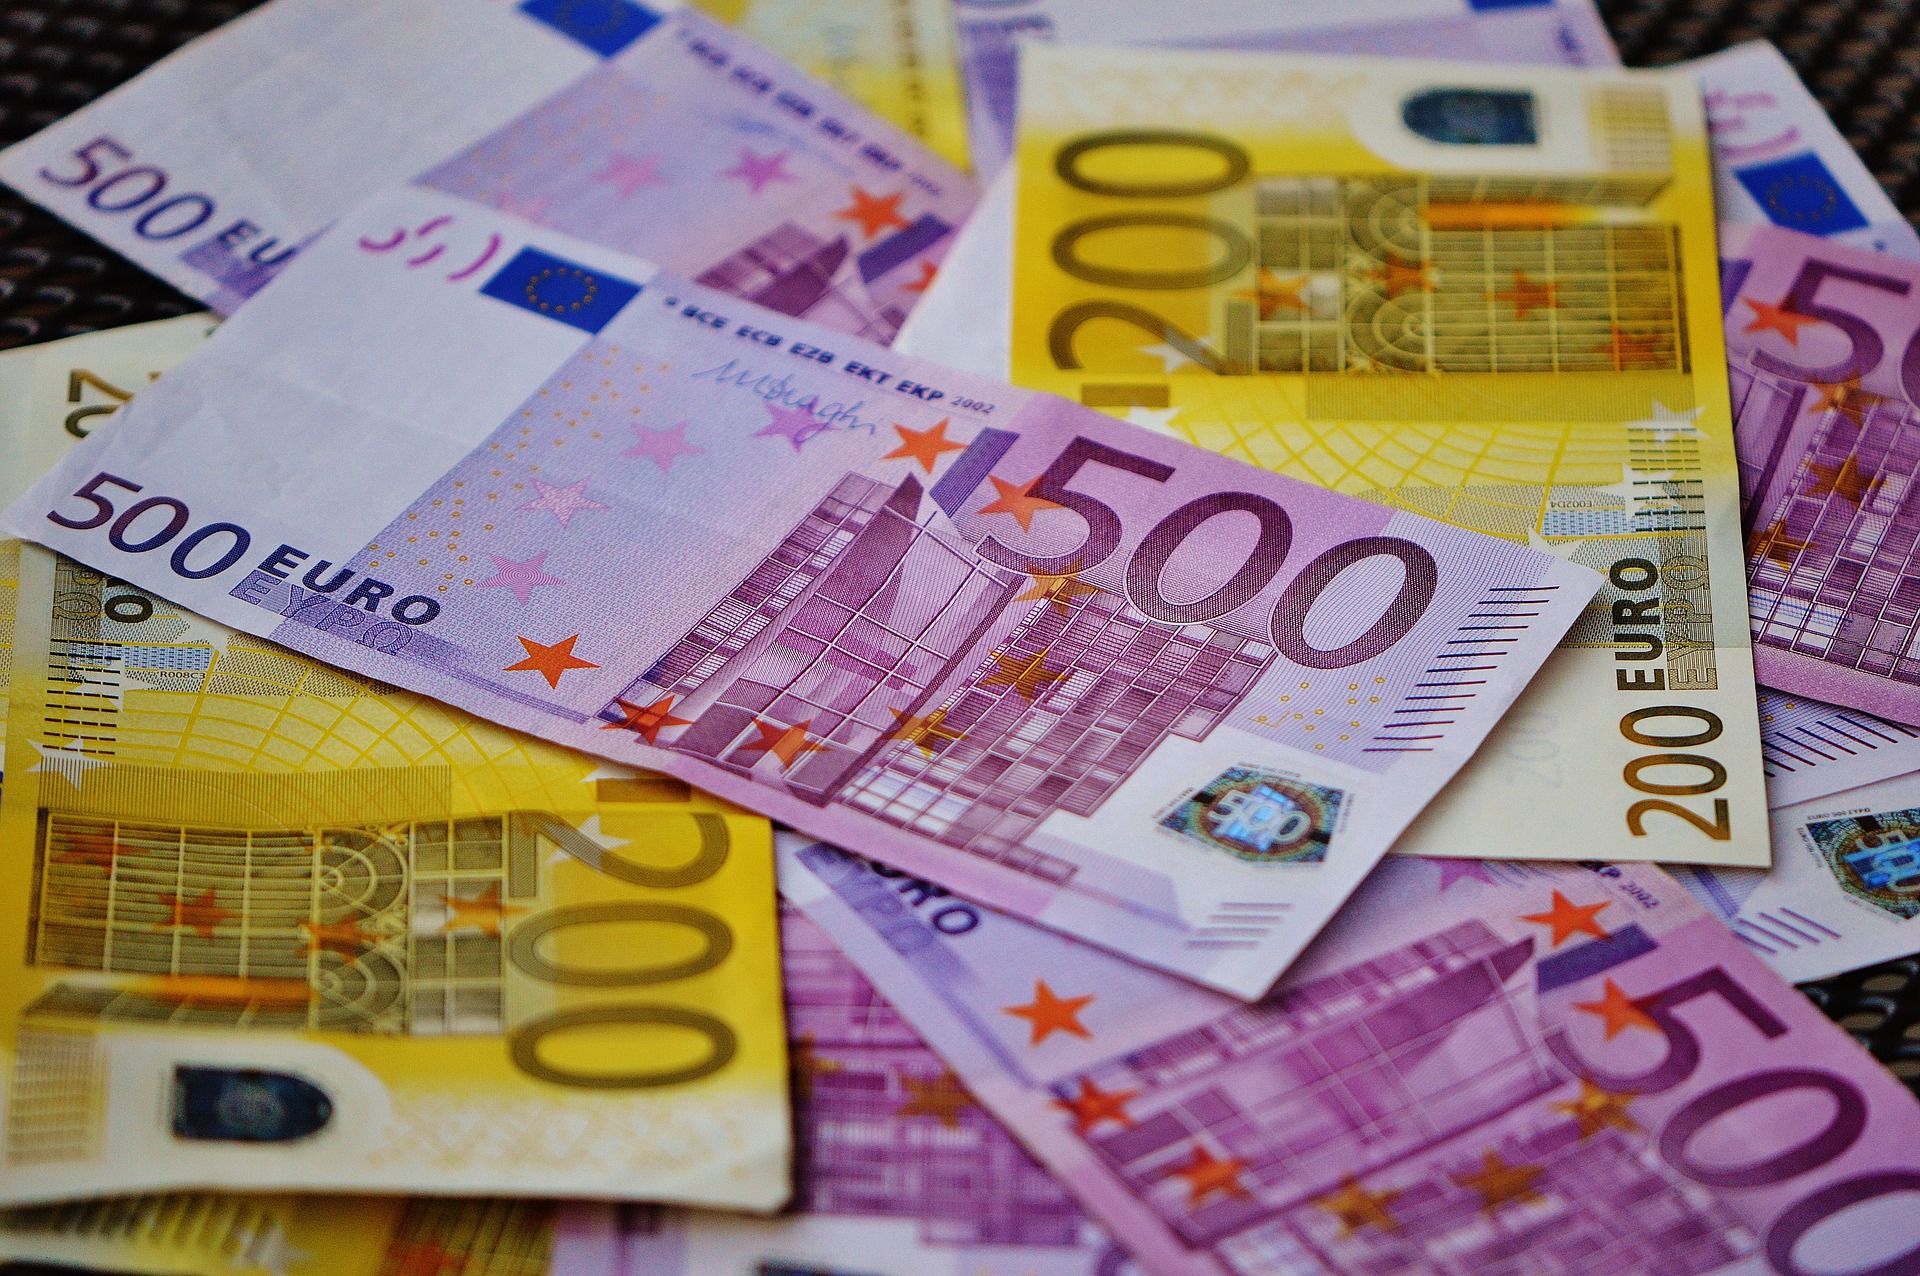 Lee won 7.5 miljoen euro in de loterij, maar heeft niks meer over